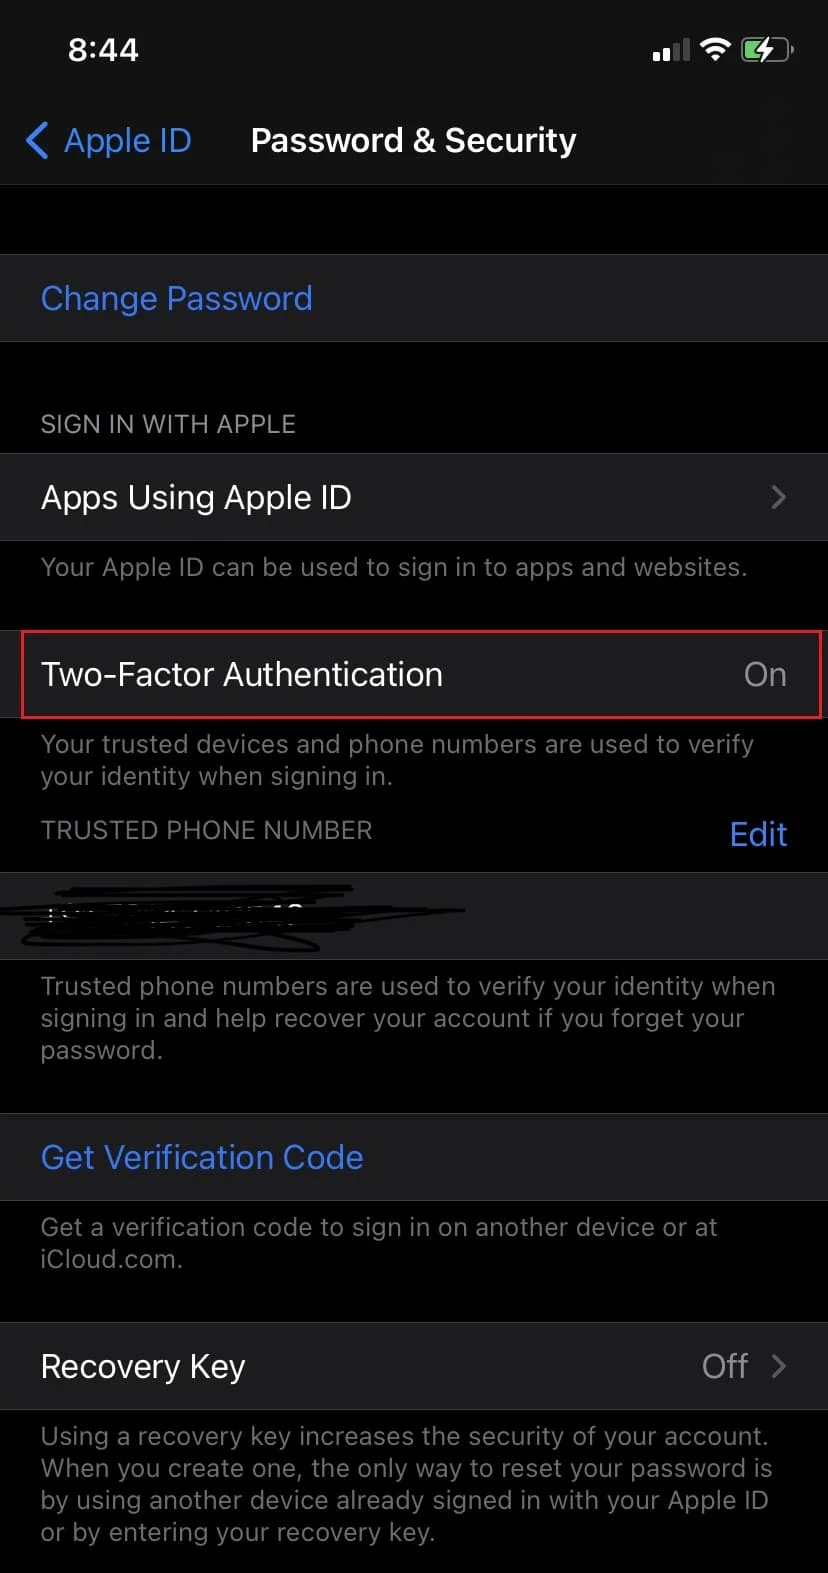 Tippen Sie auf Zwei-Faktor-Authentifizierung aktivieren | Apple Zwei-Faktor-Authentifizierung